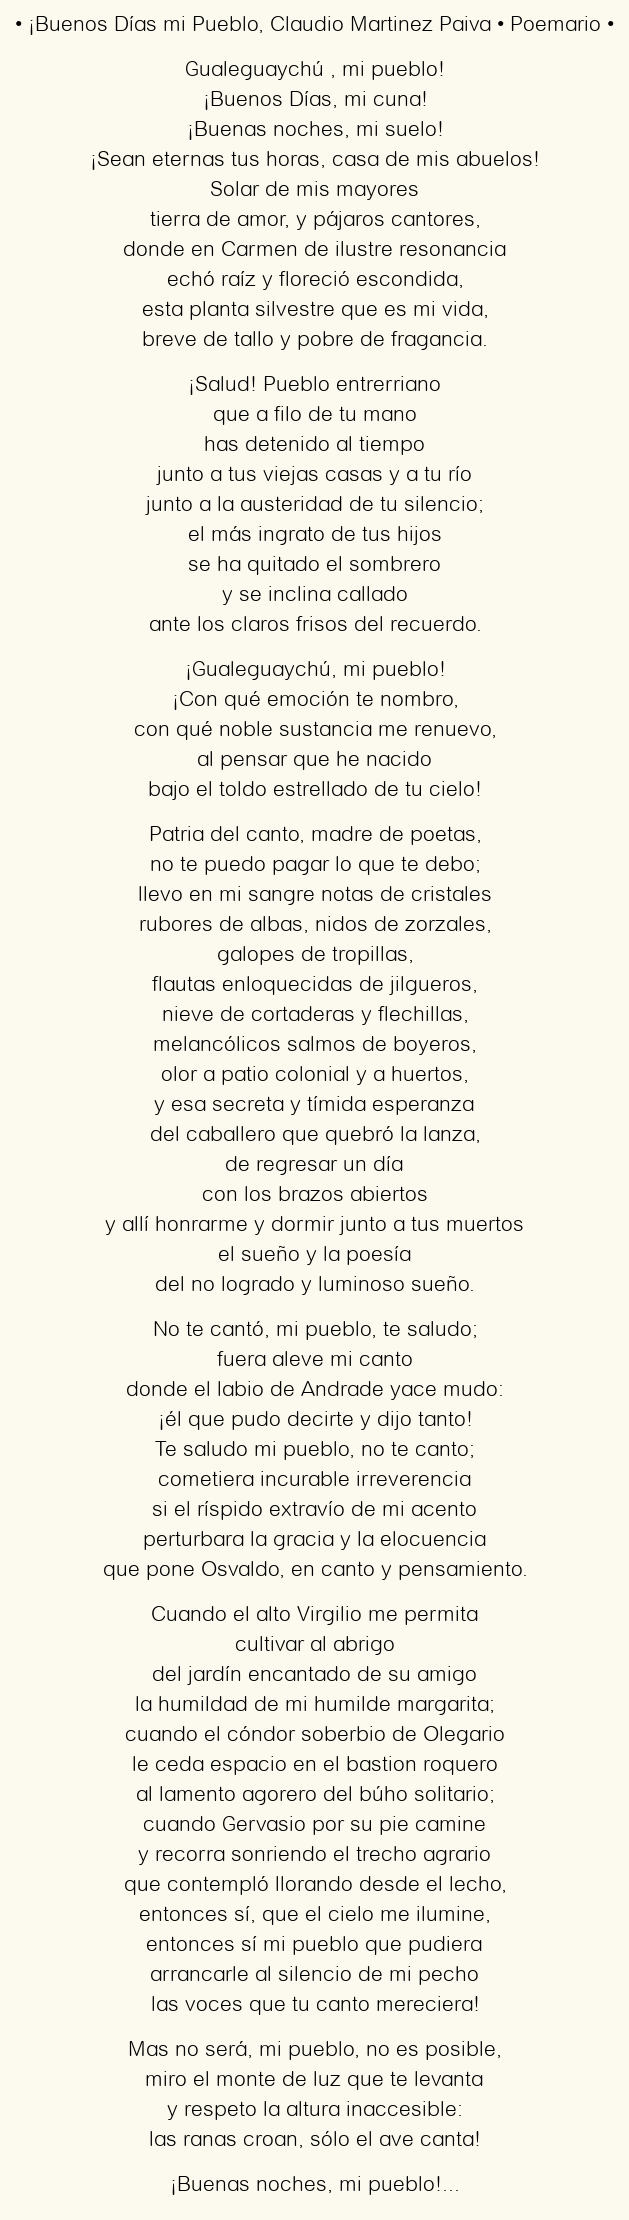 Imagen con el poema ¡Buenos Días mi Pueblo, por Claudio Martinez Paiva